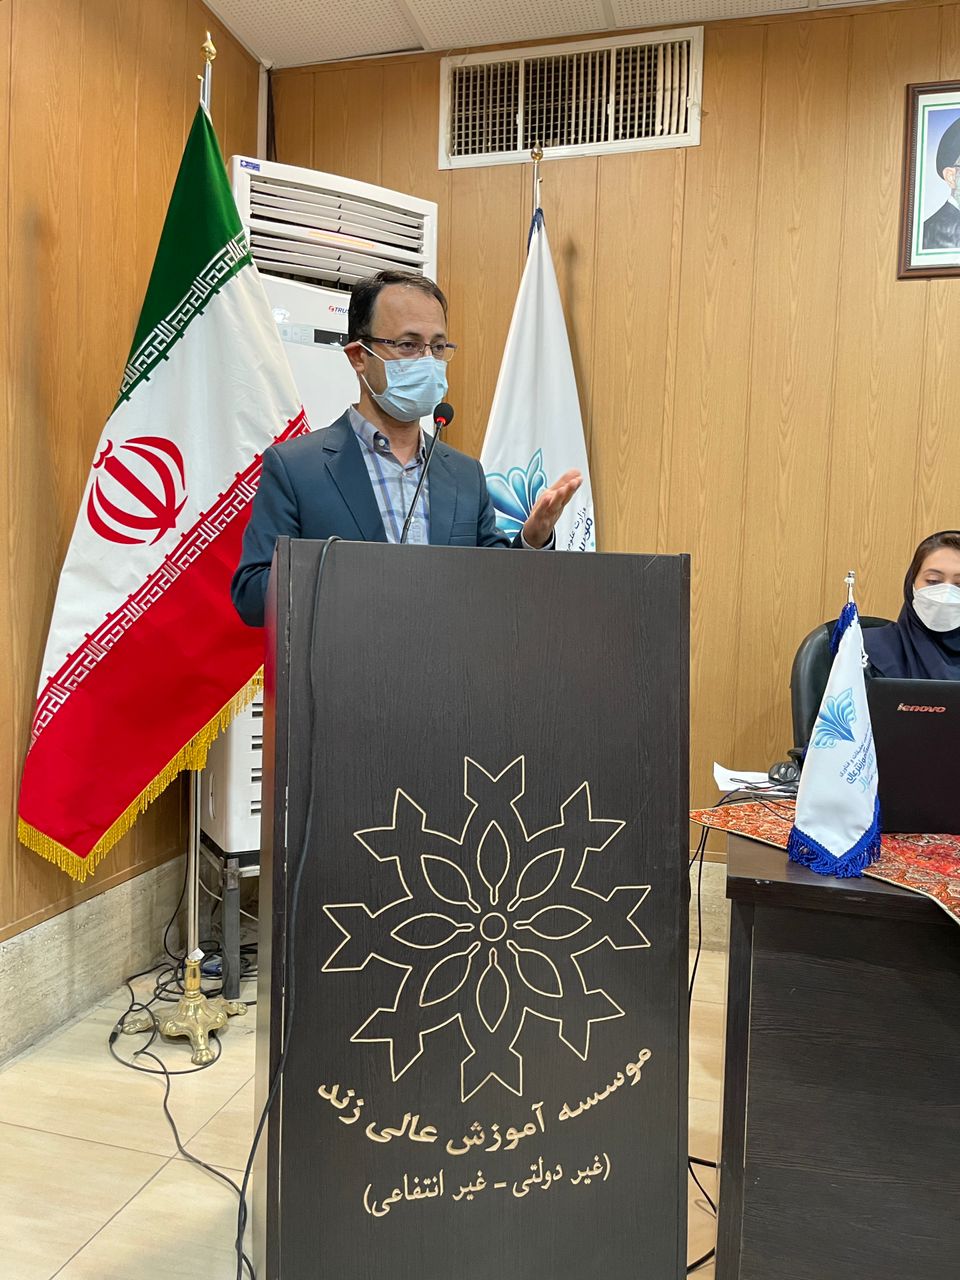 سخنرانی دکتر محمدجواد دهقانی در موسسه آموزش عالی زند شیراز به مناسبت هفته پژوهش